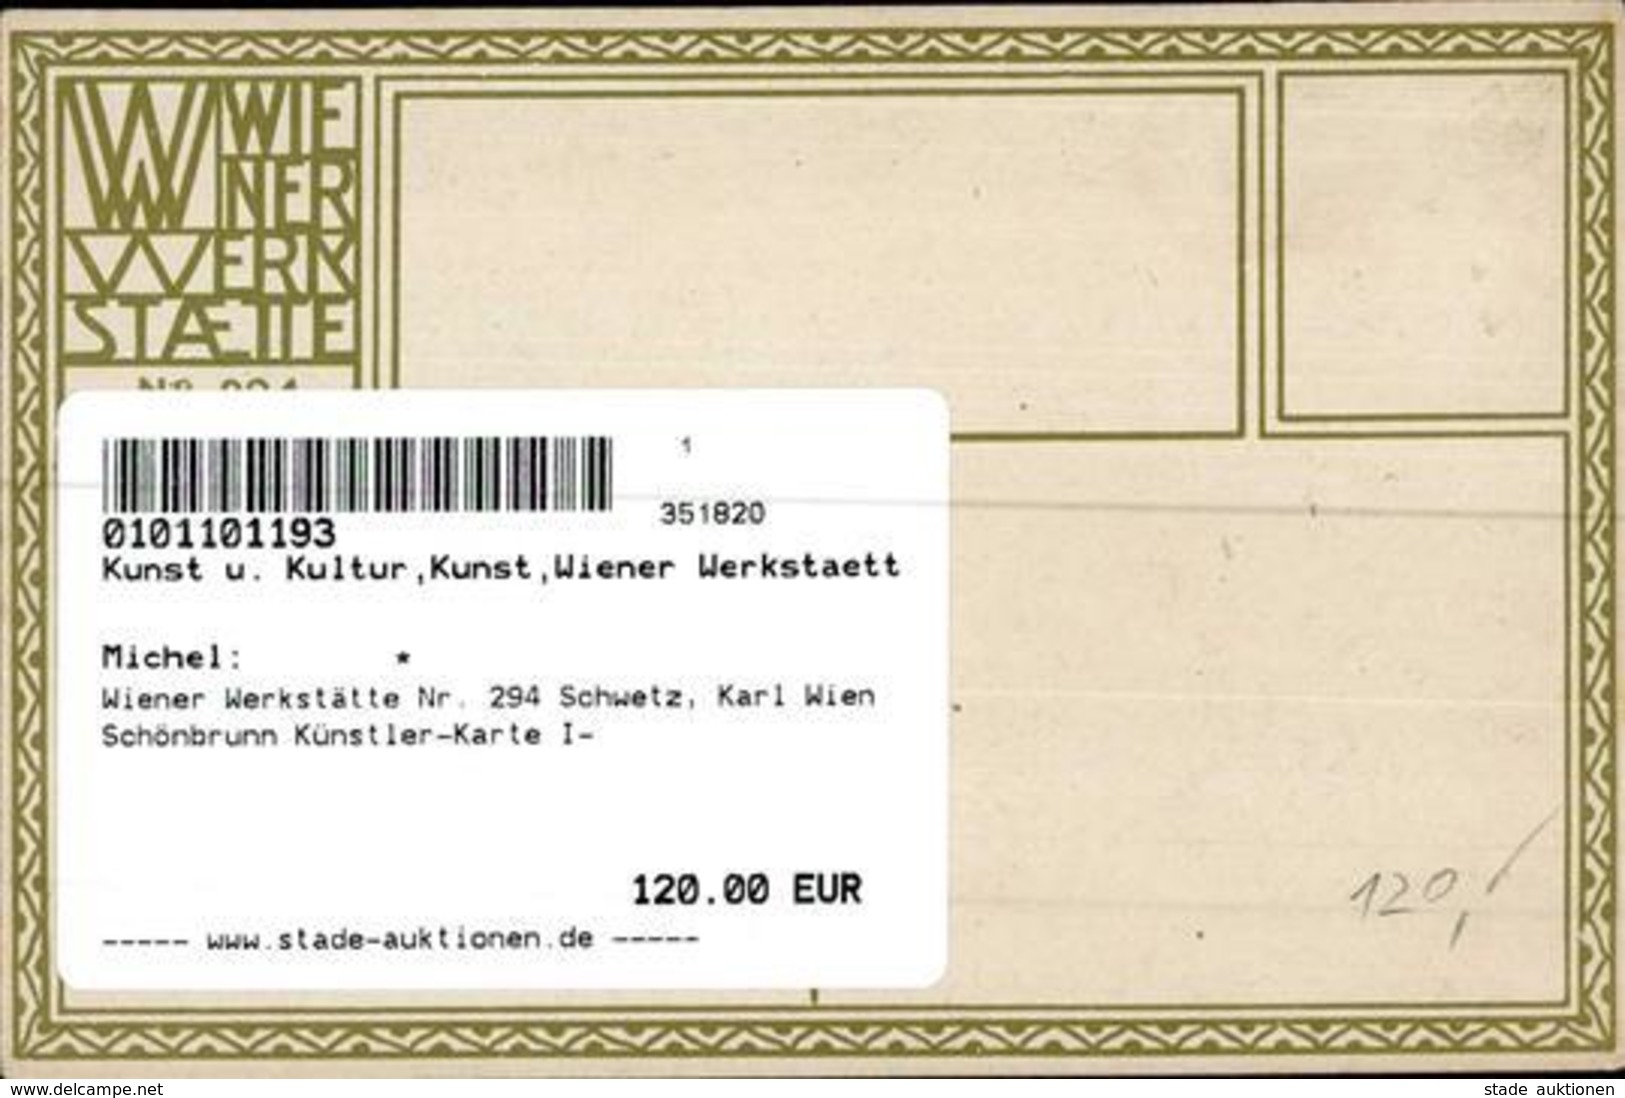 Wiener Werkstätte Nr. 294 Schwetz, Karl Wien Schönbrunn Künstler-Karte I- - Kokoschka